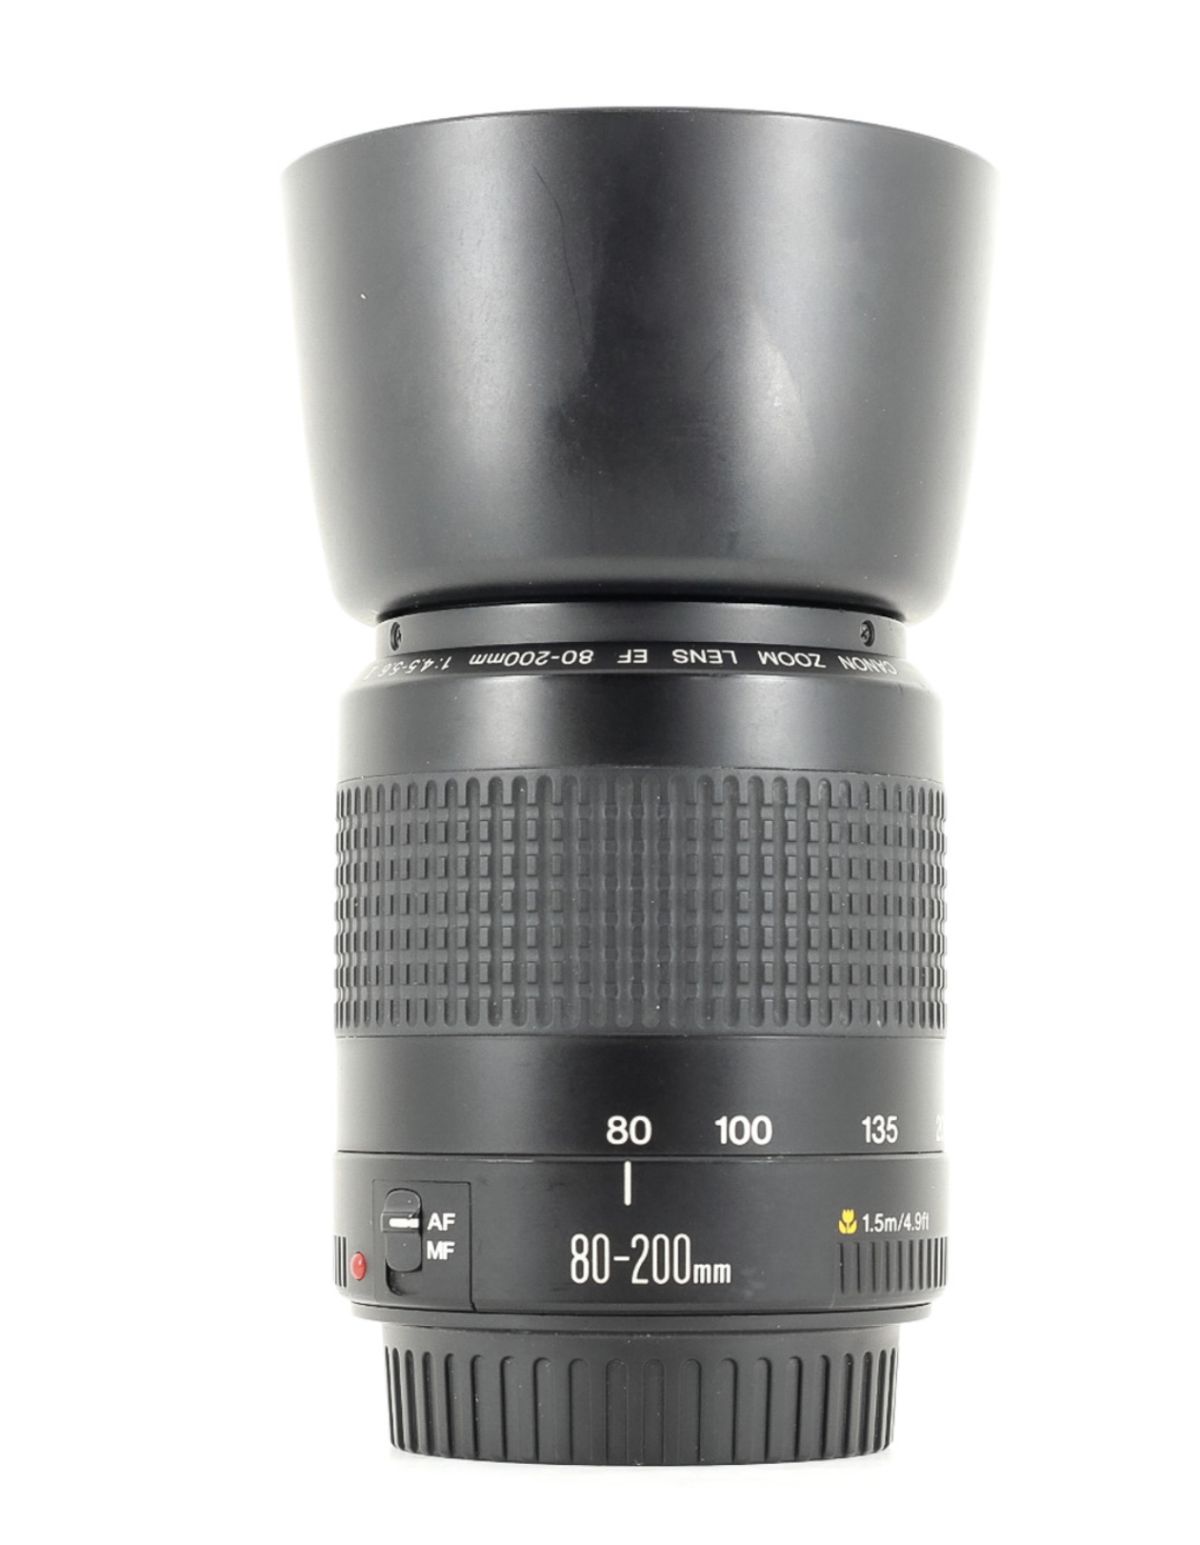 Canon EF 80-200mm 1:4.5-5.6 II Téléobjectif pour Canon Reflex